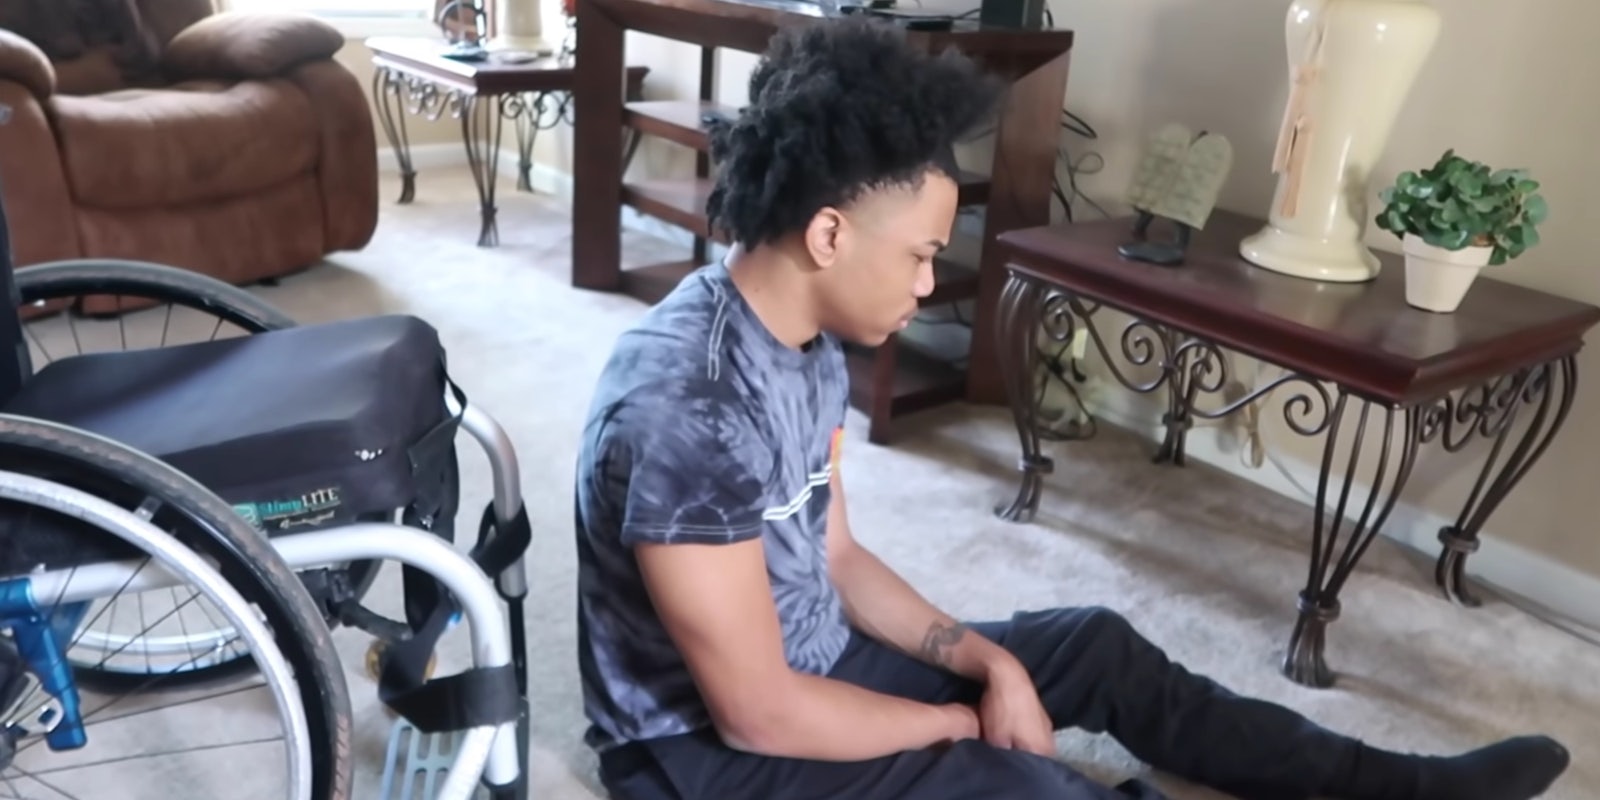 youtuber hiding disabled boyfriend's wheelchair